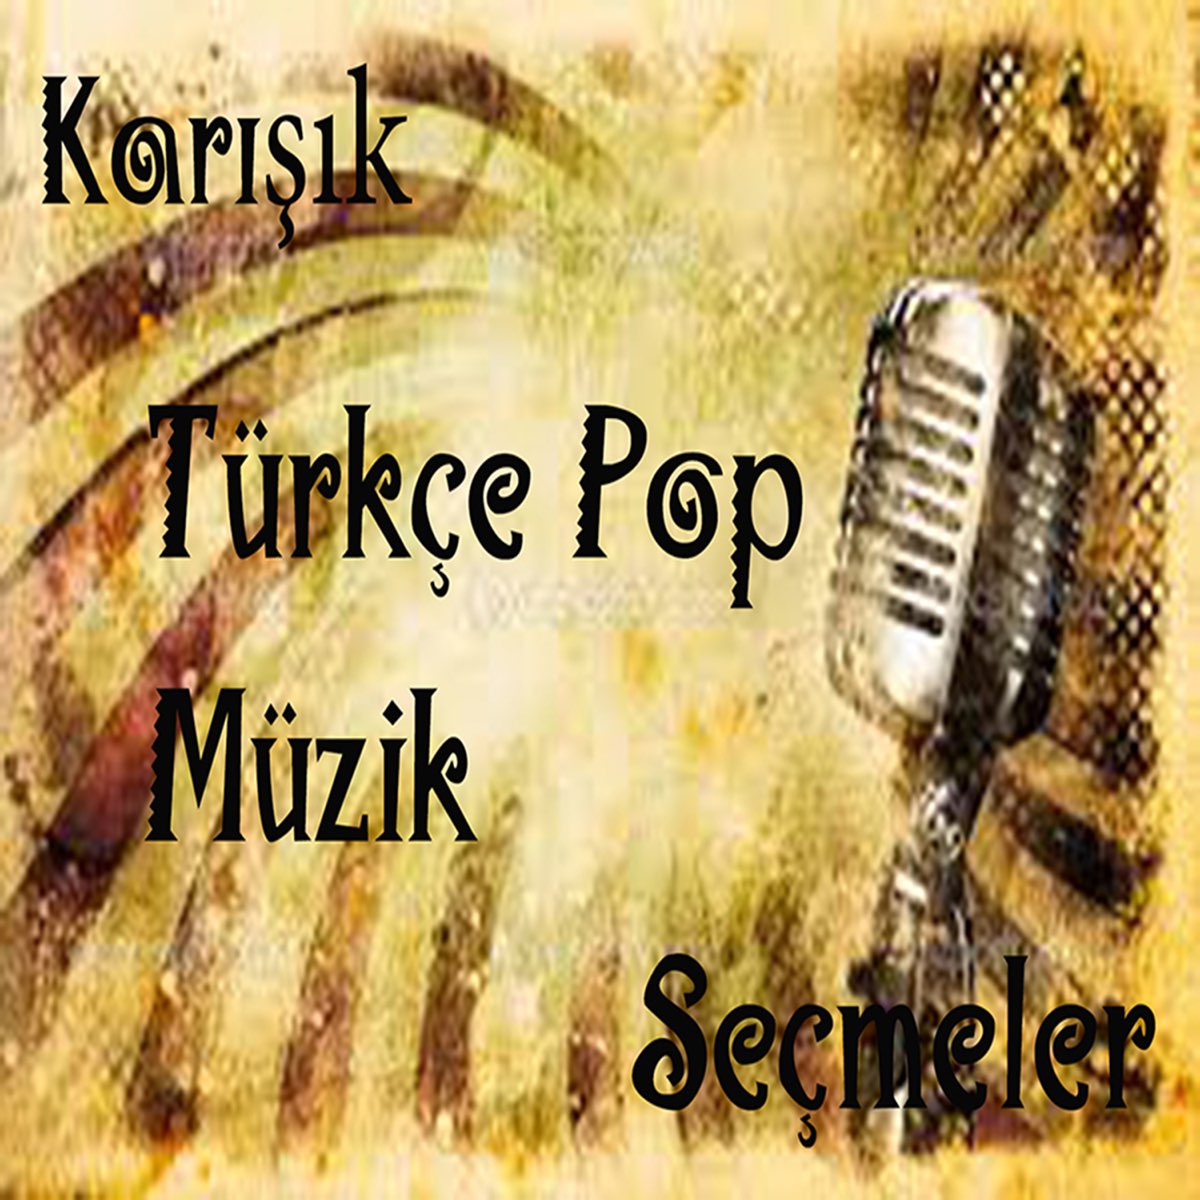 Karışık Türkçe Pop Müzik Seçmeler - Album by Various Artists - Apple Music